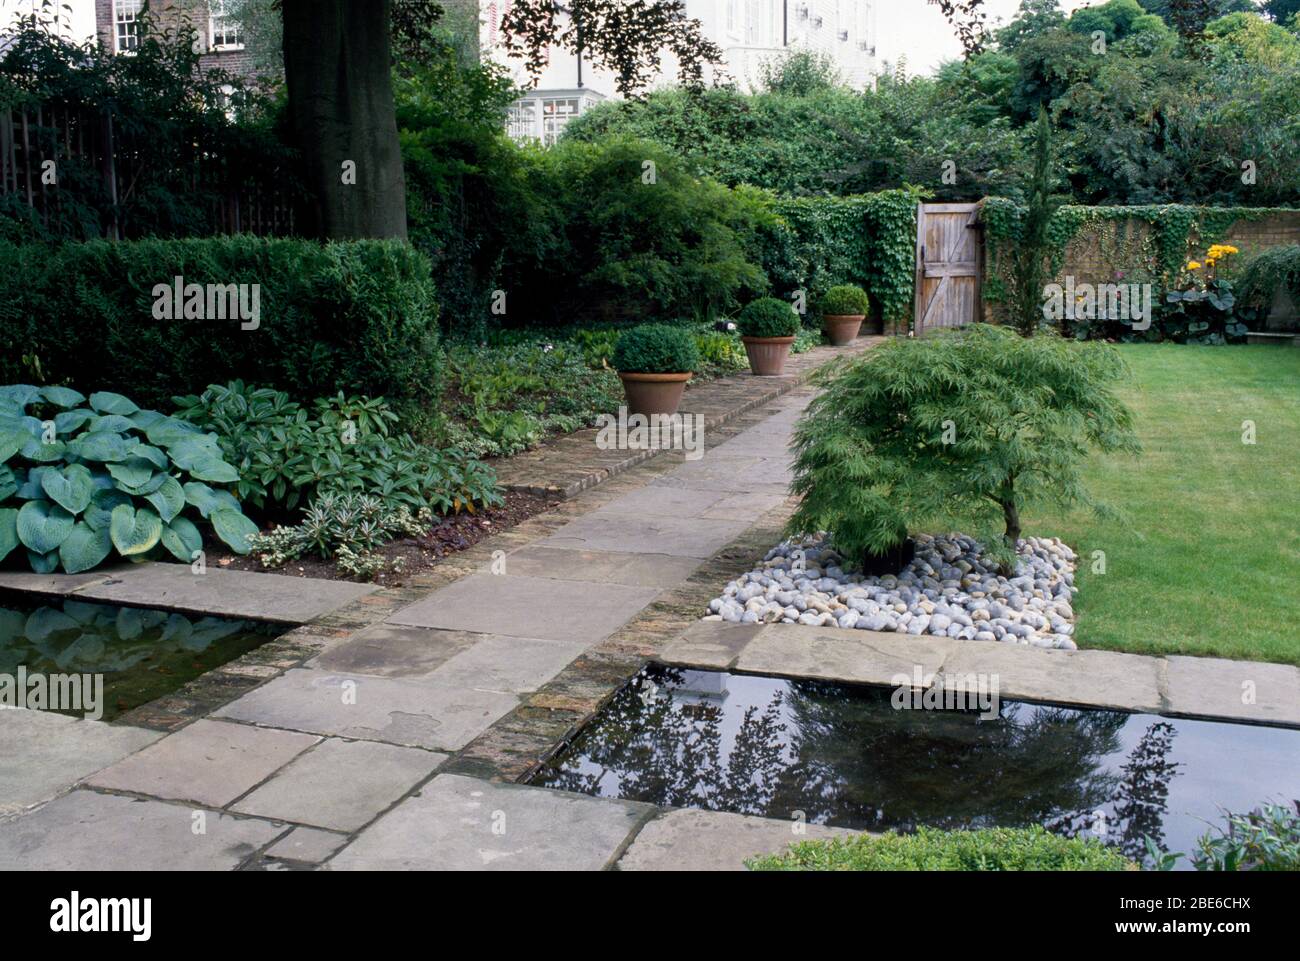 York strada in pietra su un canale a un cancello giardino con hostas, acero giapponese e palline in vaso. Foto Stock